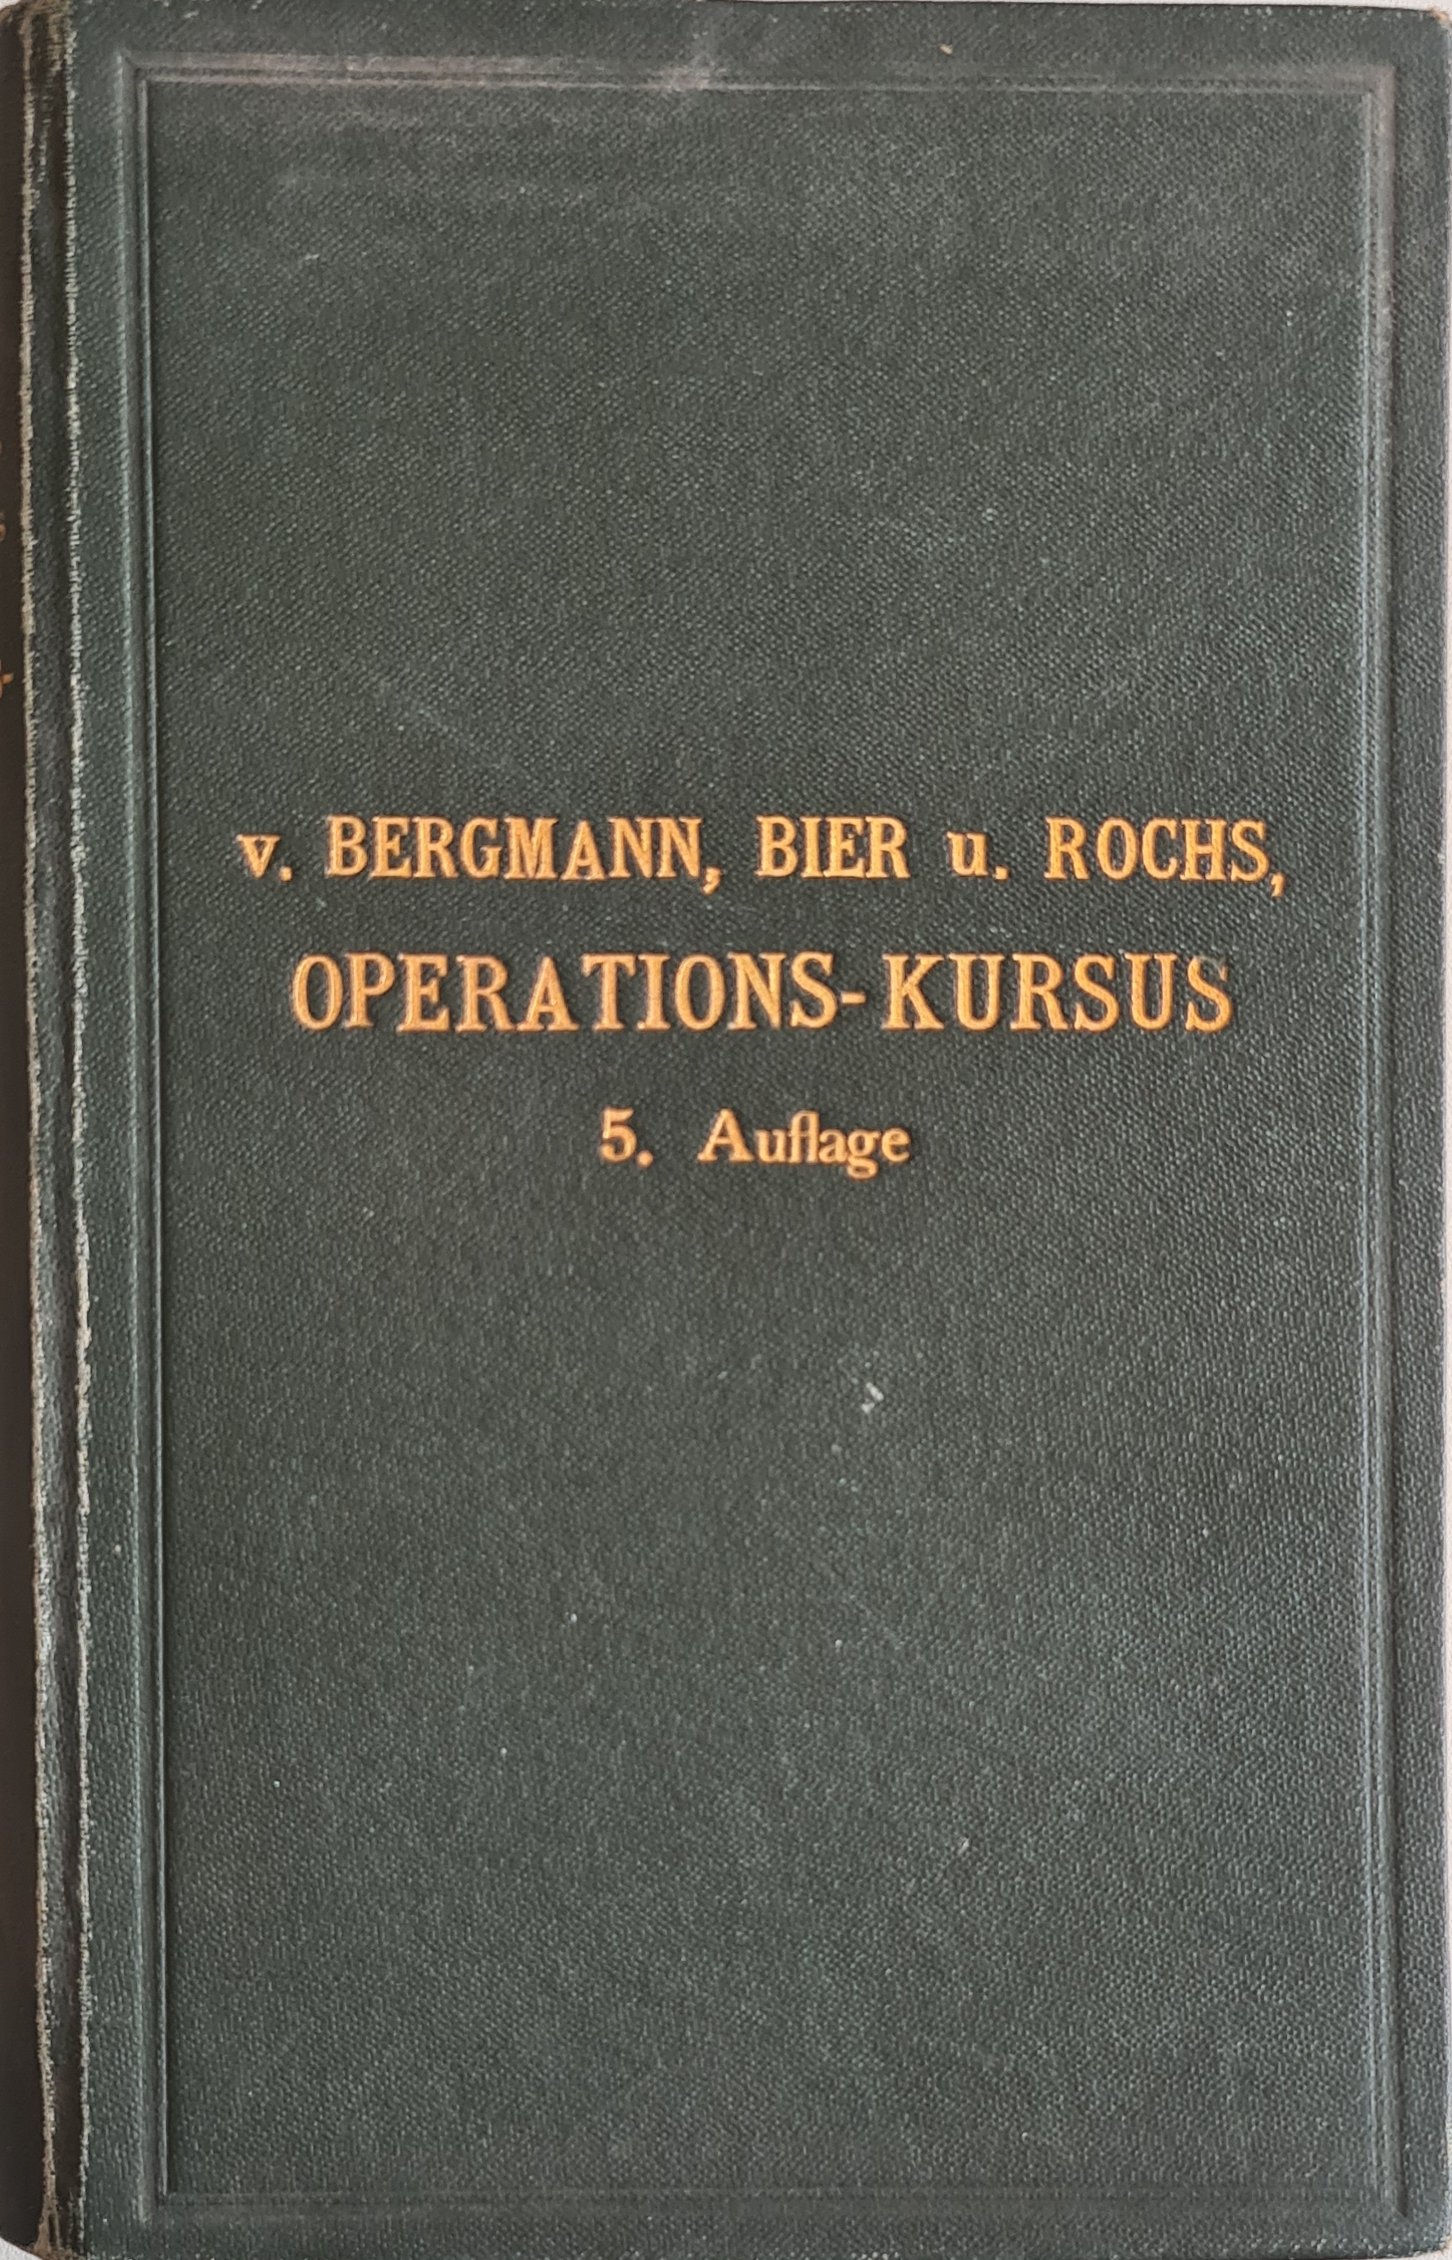 Operations-Kursus (Krankenhausmuseum Bielefeld e.V. CC BY-NC-SA)